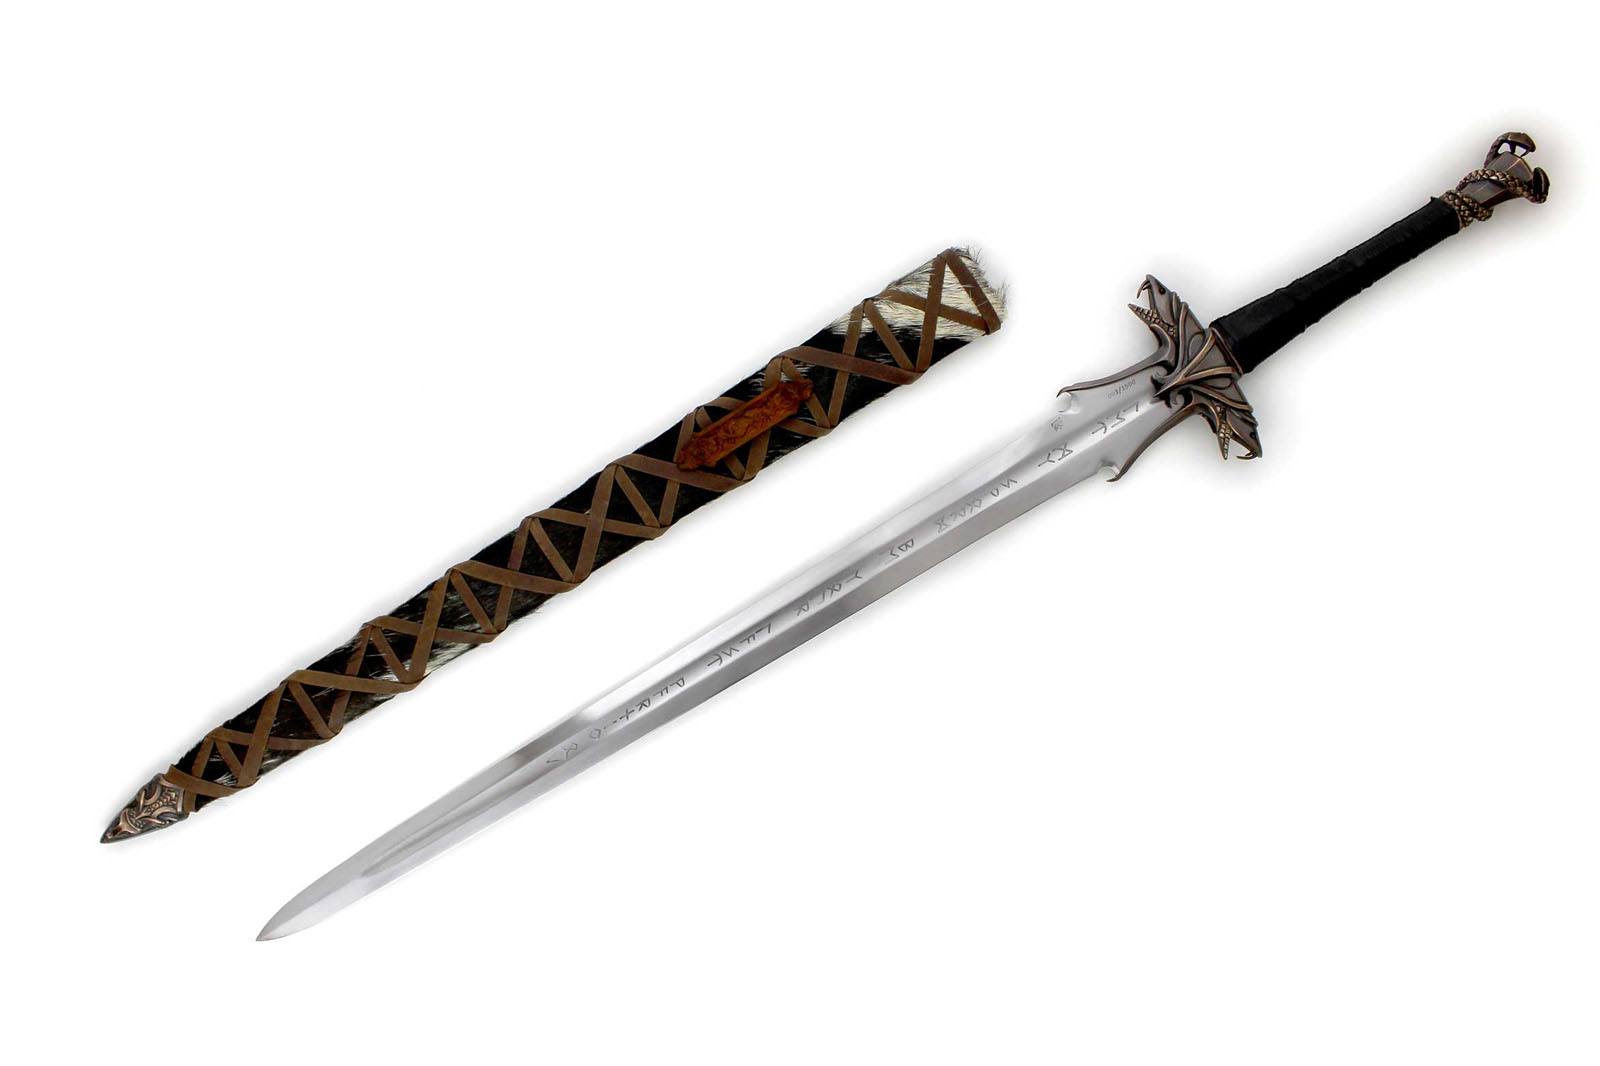 The Warmonger Barbarian Sword